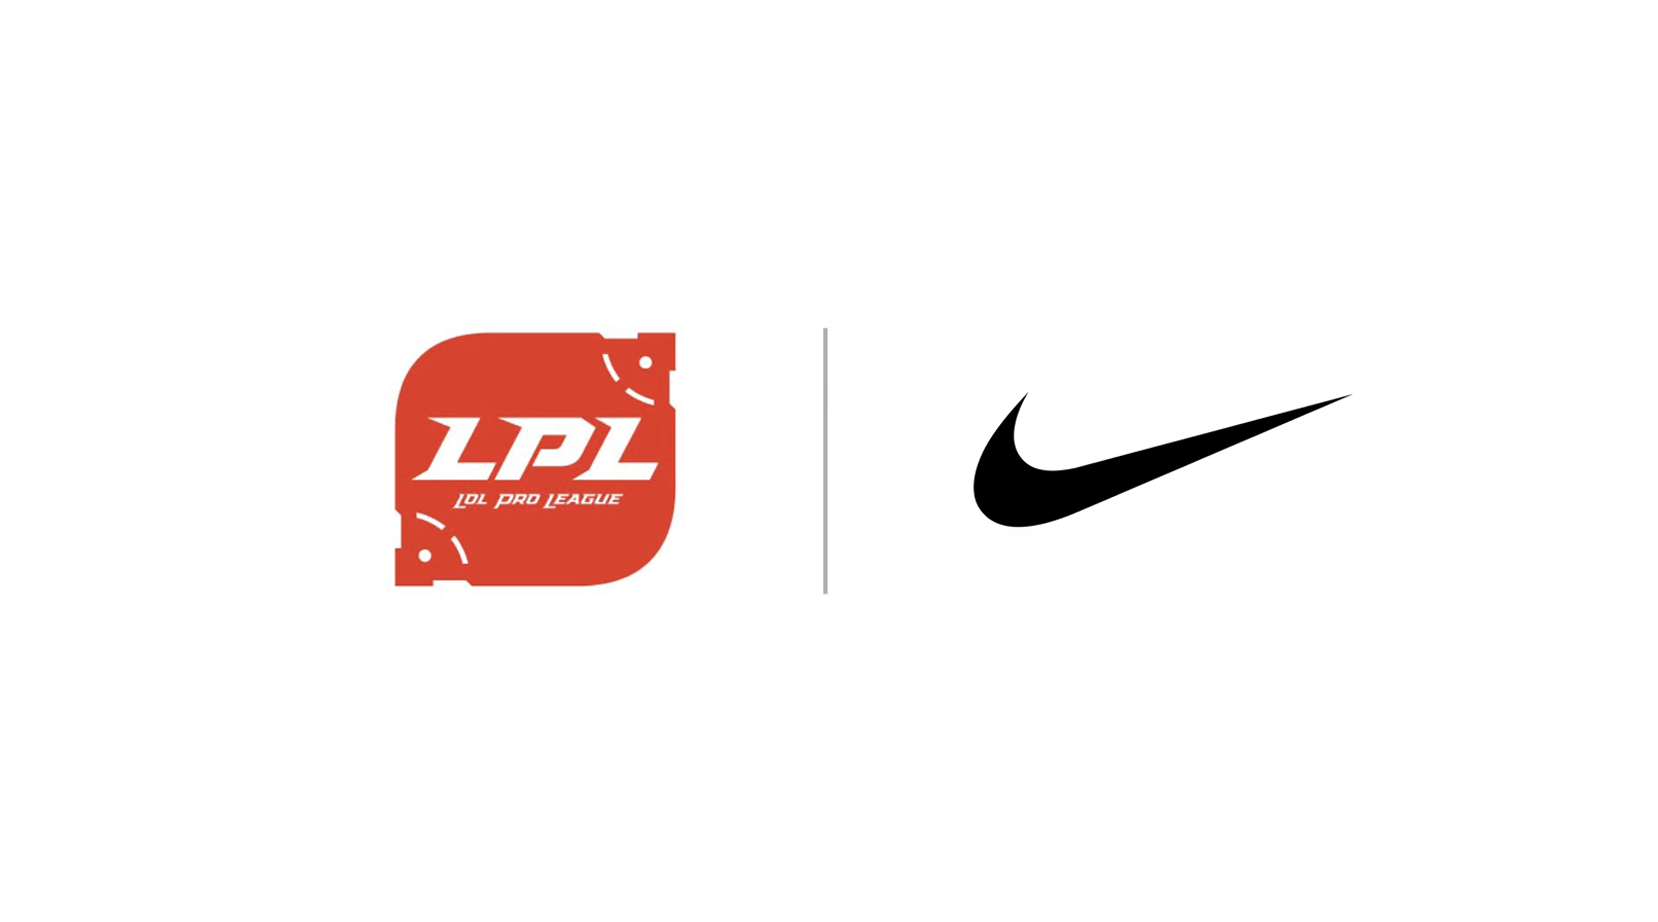 LPL Nike LoL Esports